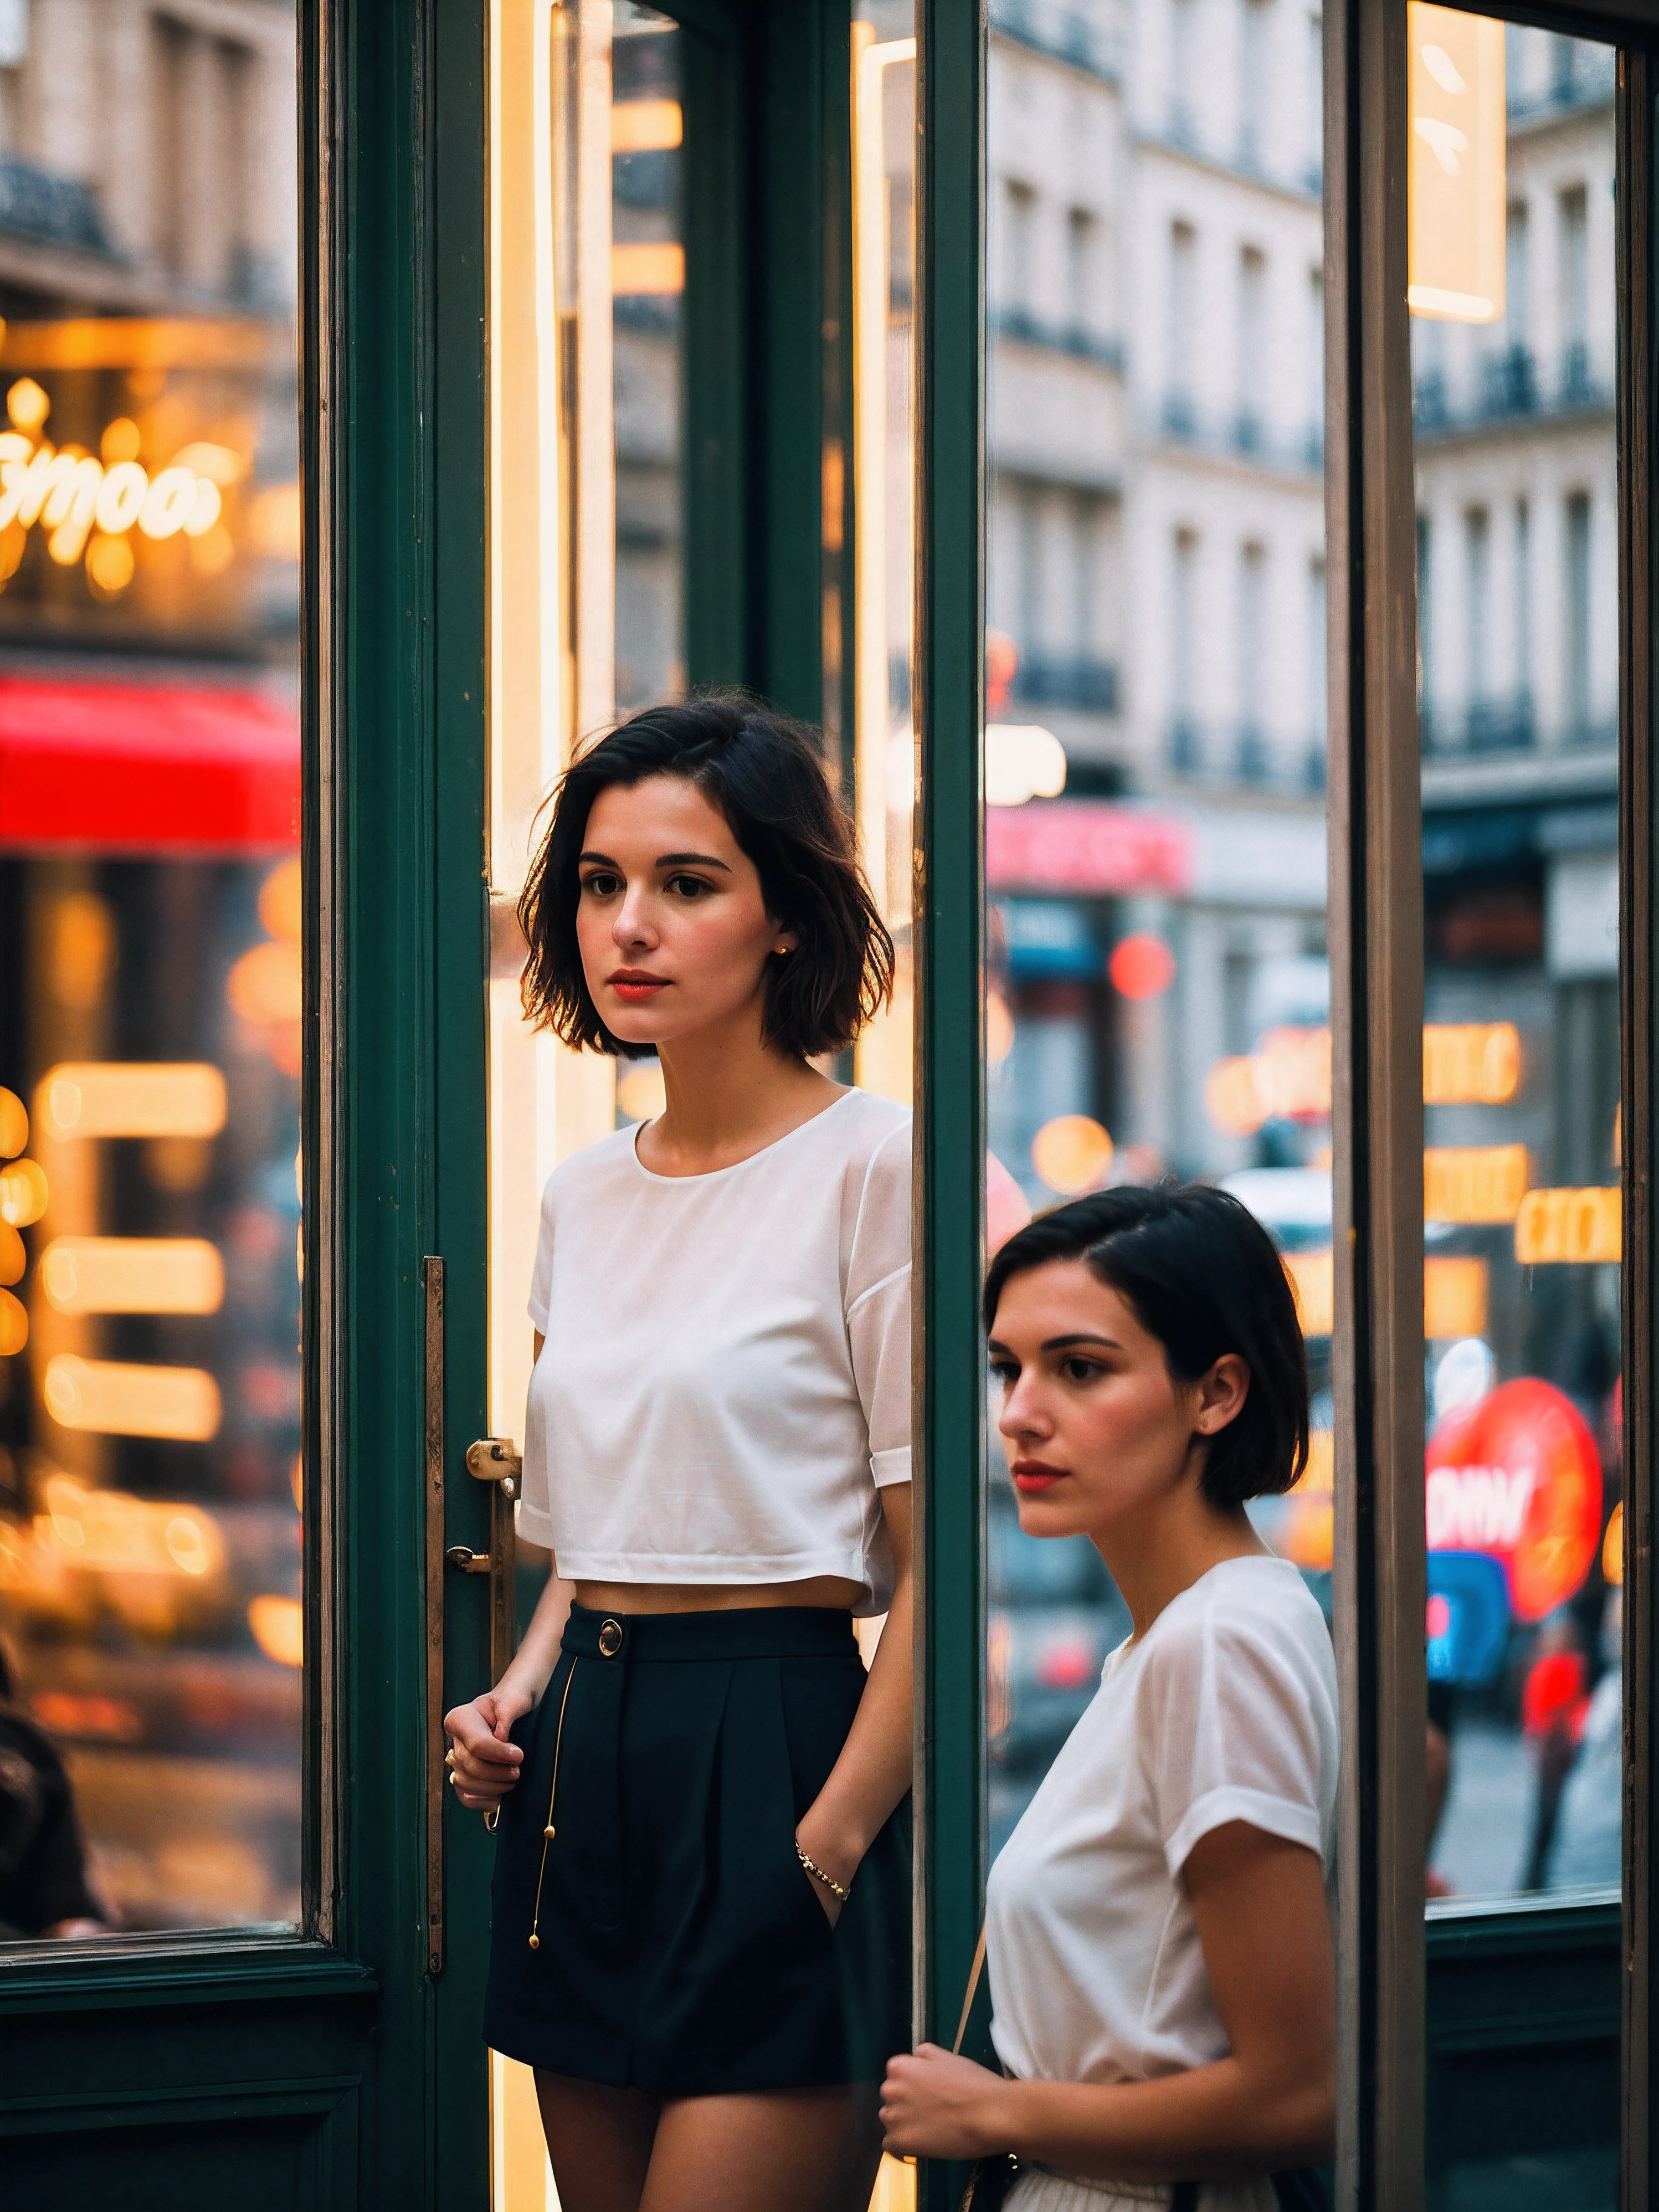 時尚法國女孩的街頭拍照, 短髮, 在櫥窗購物時捕捉她在店面的倒影, 上半身框架, 在巴黎古色古香的街道上, 帶有商店招牌的霓虹燈招牌, 從高角度拍攝, 關於索尼 A7111, 與一個 (散景效果:1.3),(加里·維諾格勒的風格:1.4)